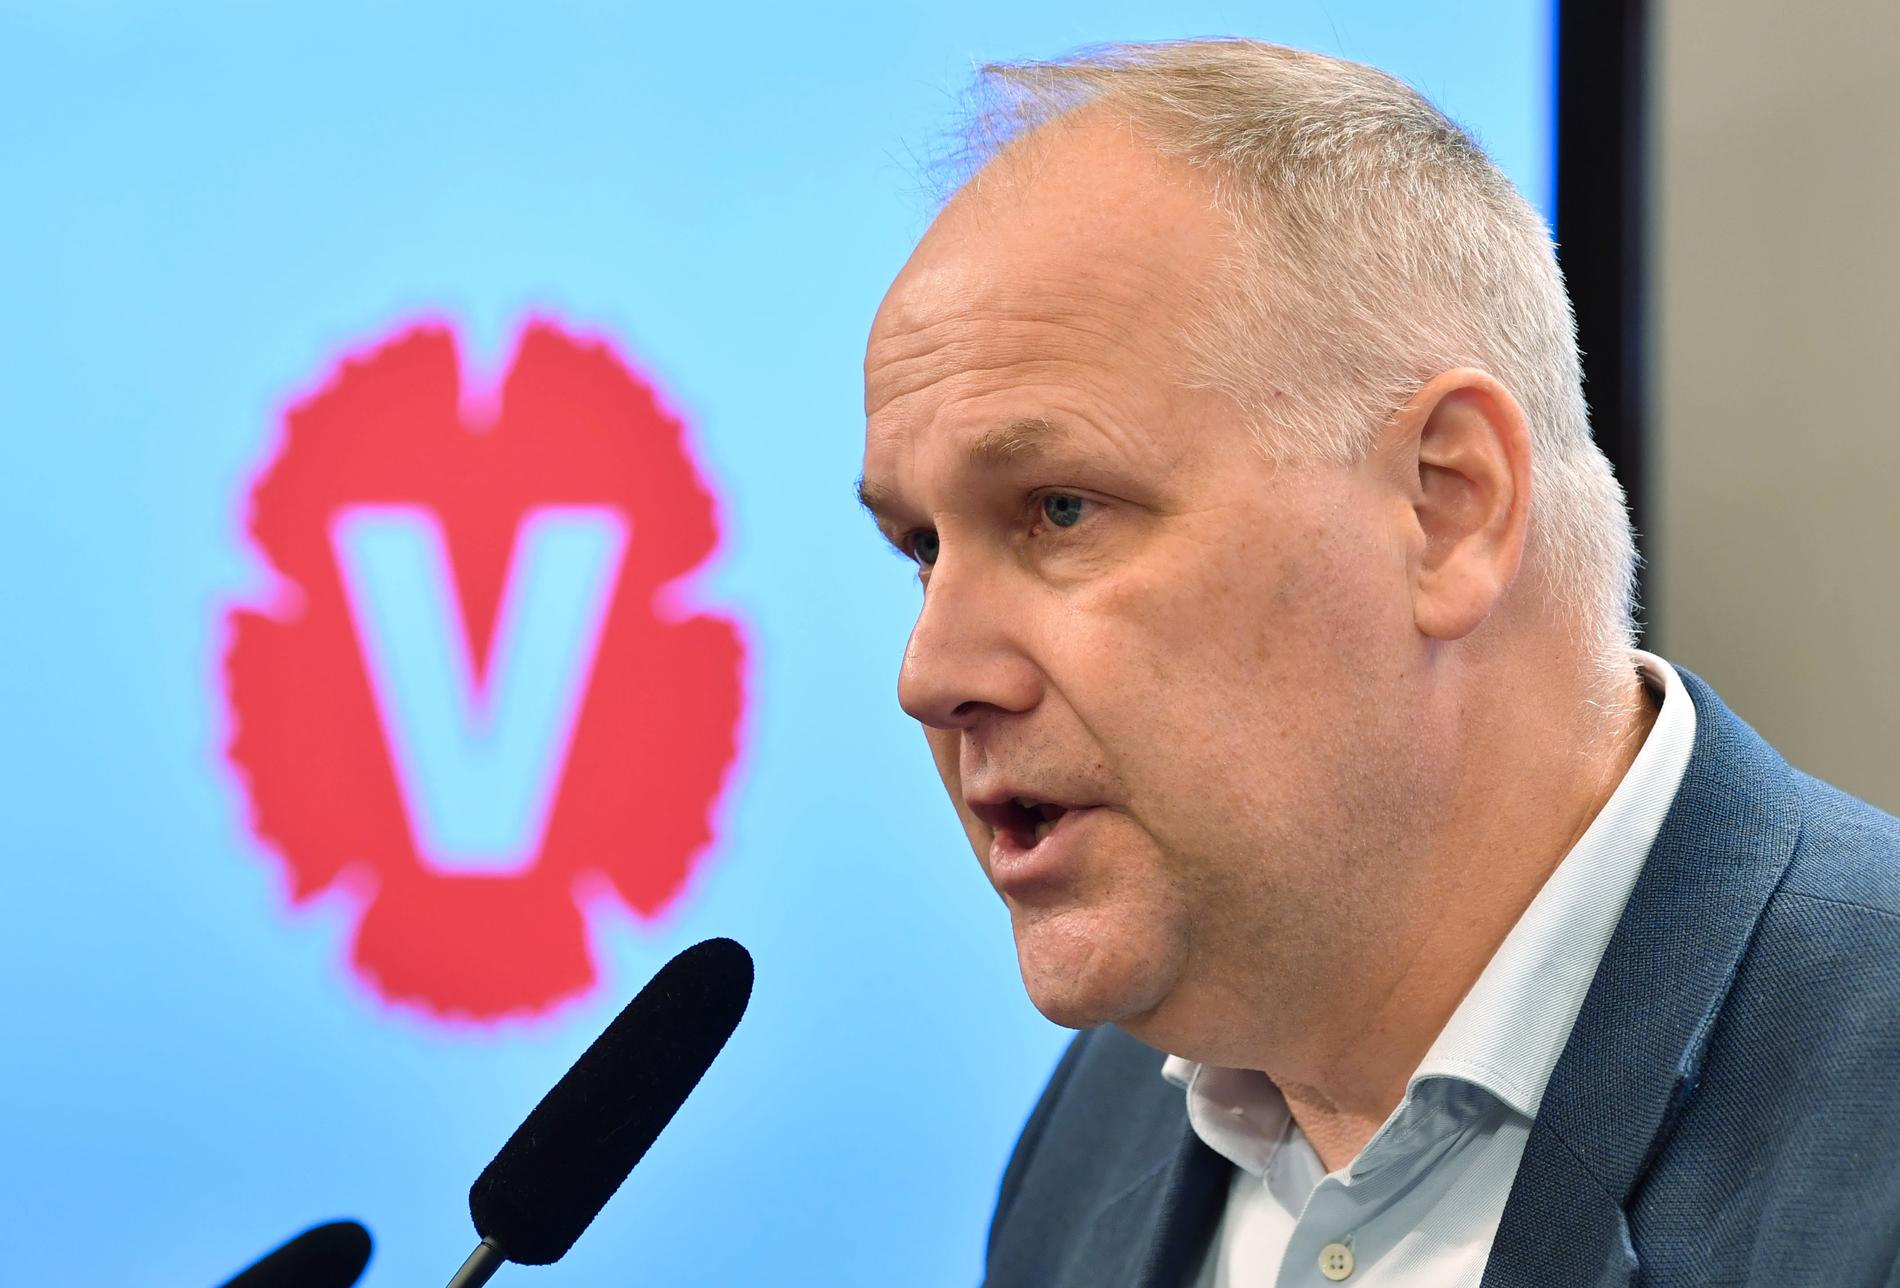 Vänsterpartiets ledare Jonas Sjöstedt kommer med nya krav på regeringen. Arkivbild.